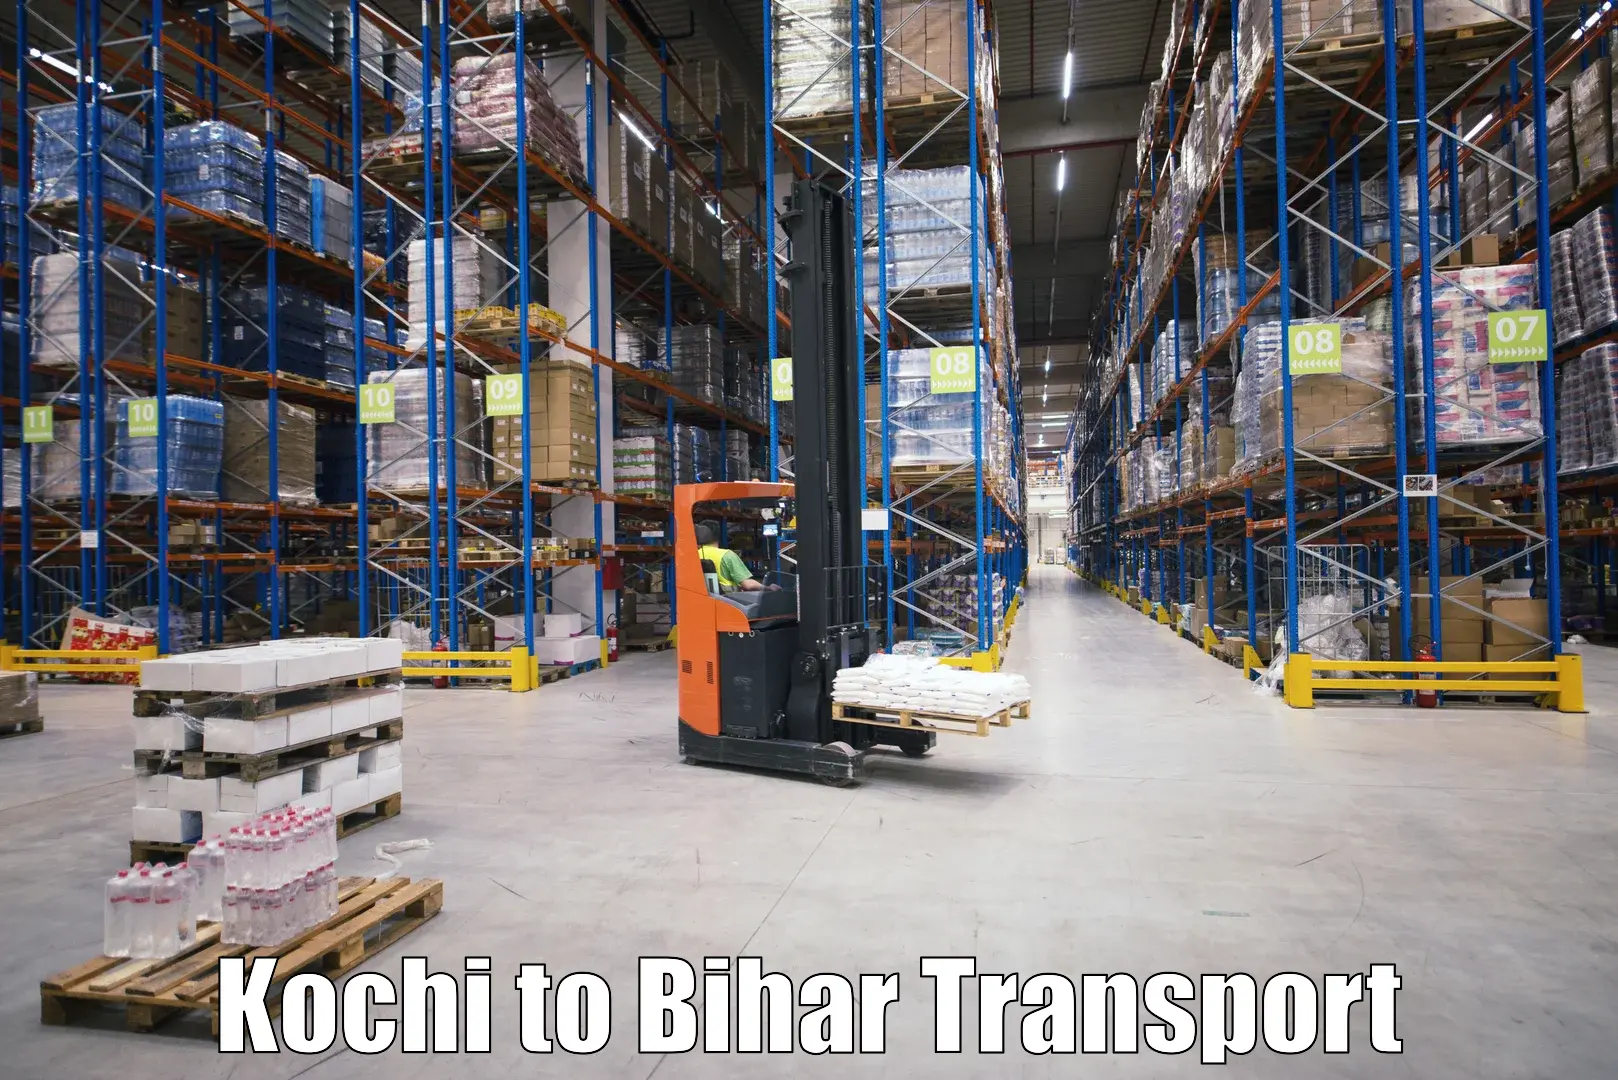 Daily transport service in Kochi to Bikramganj